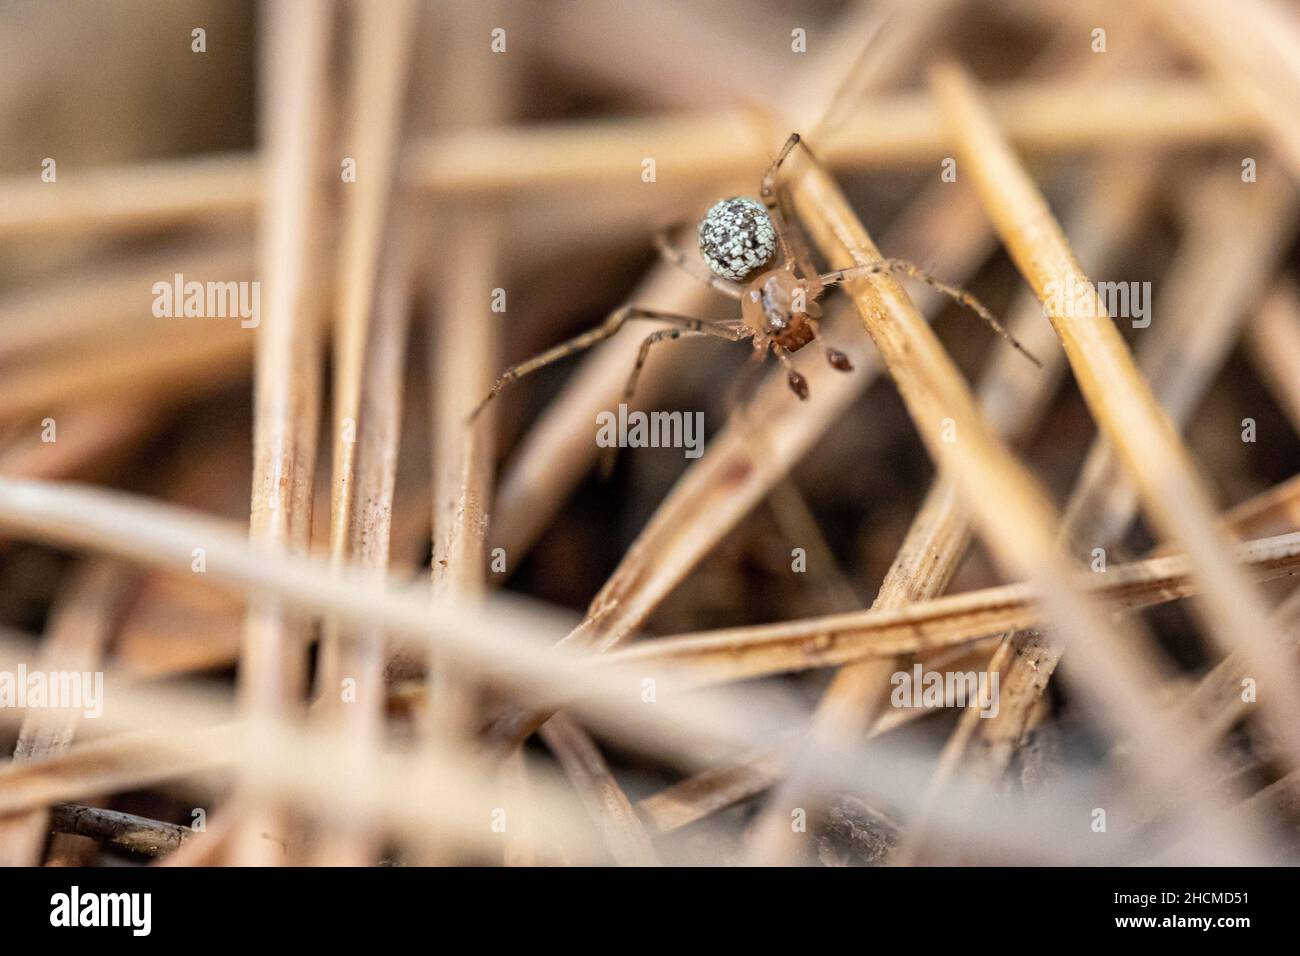 Selektive Fokusaufnahme einer haymaker-Spinne Stockfoto